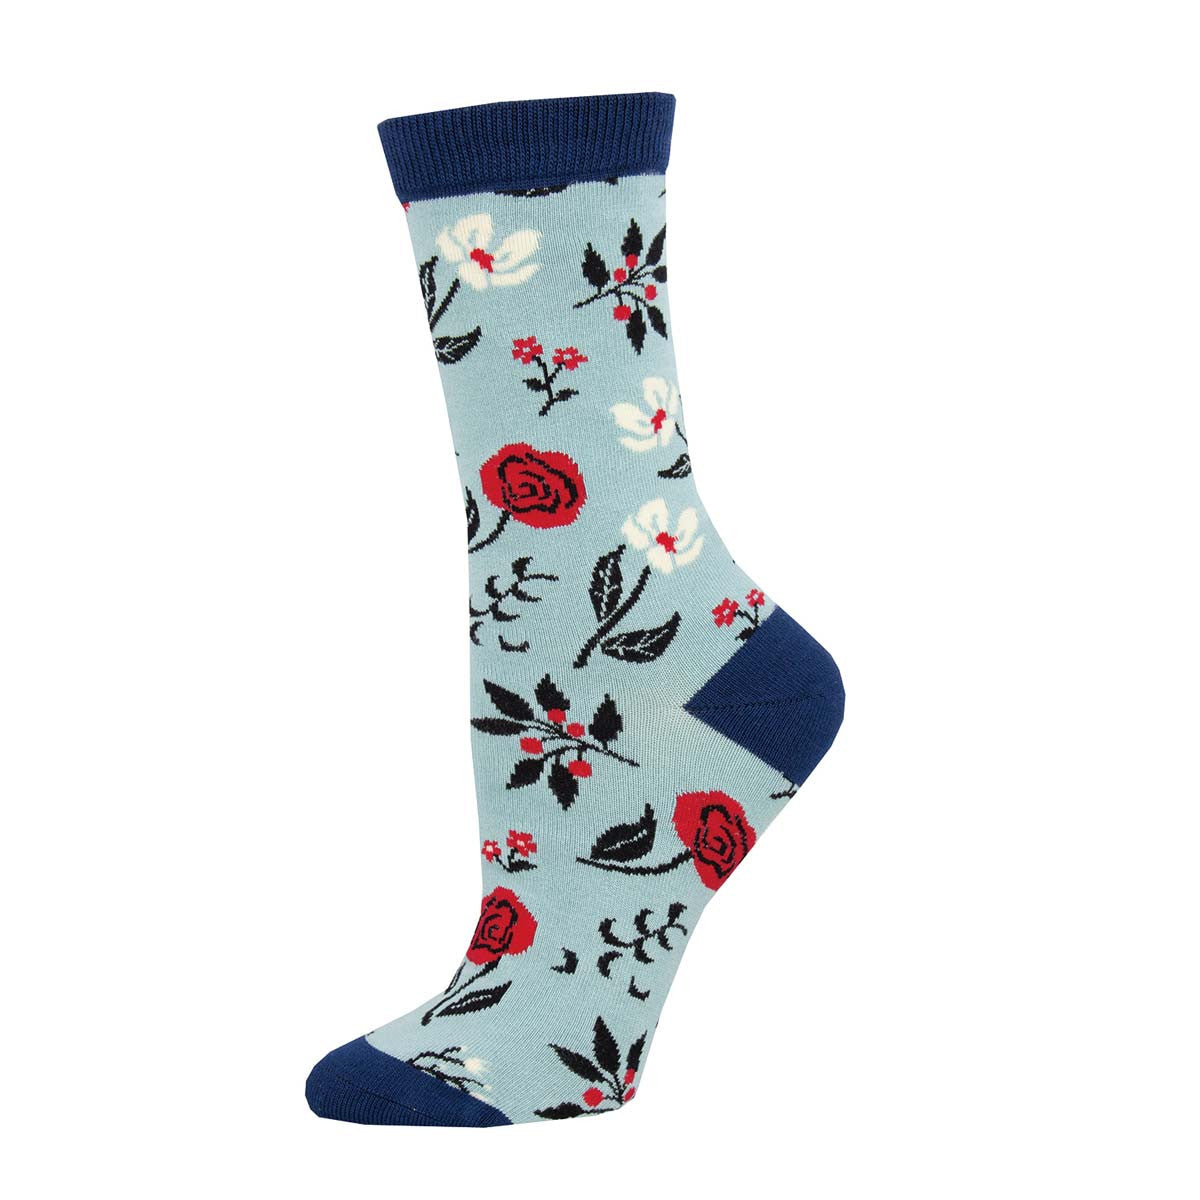 Floral Motif Socks - Women's